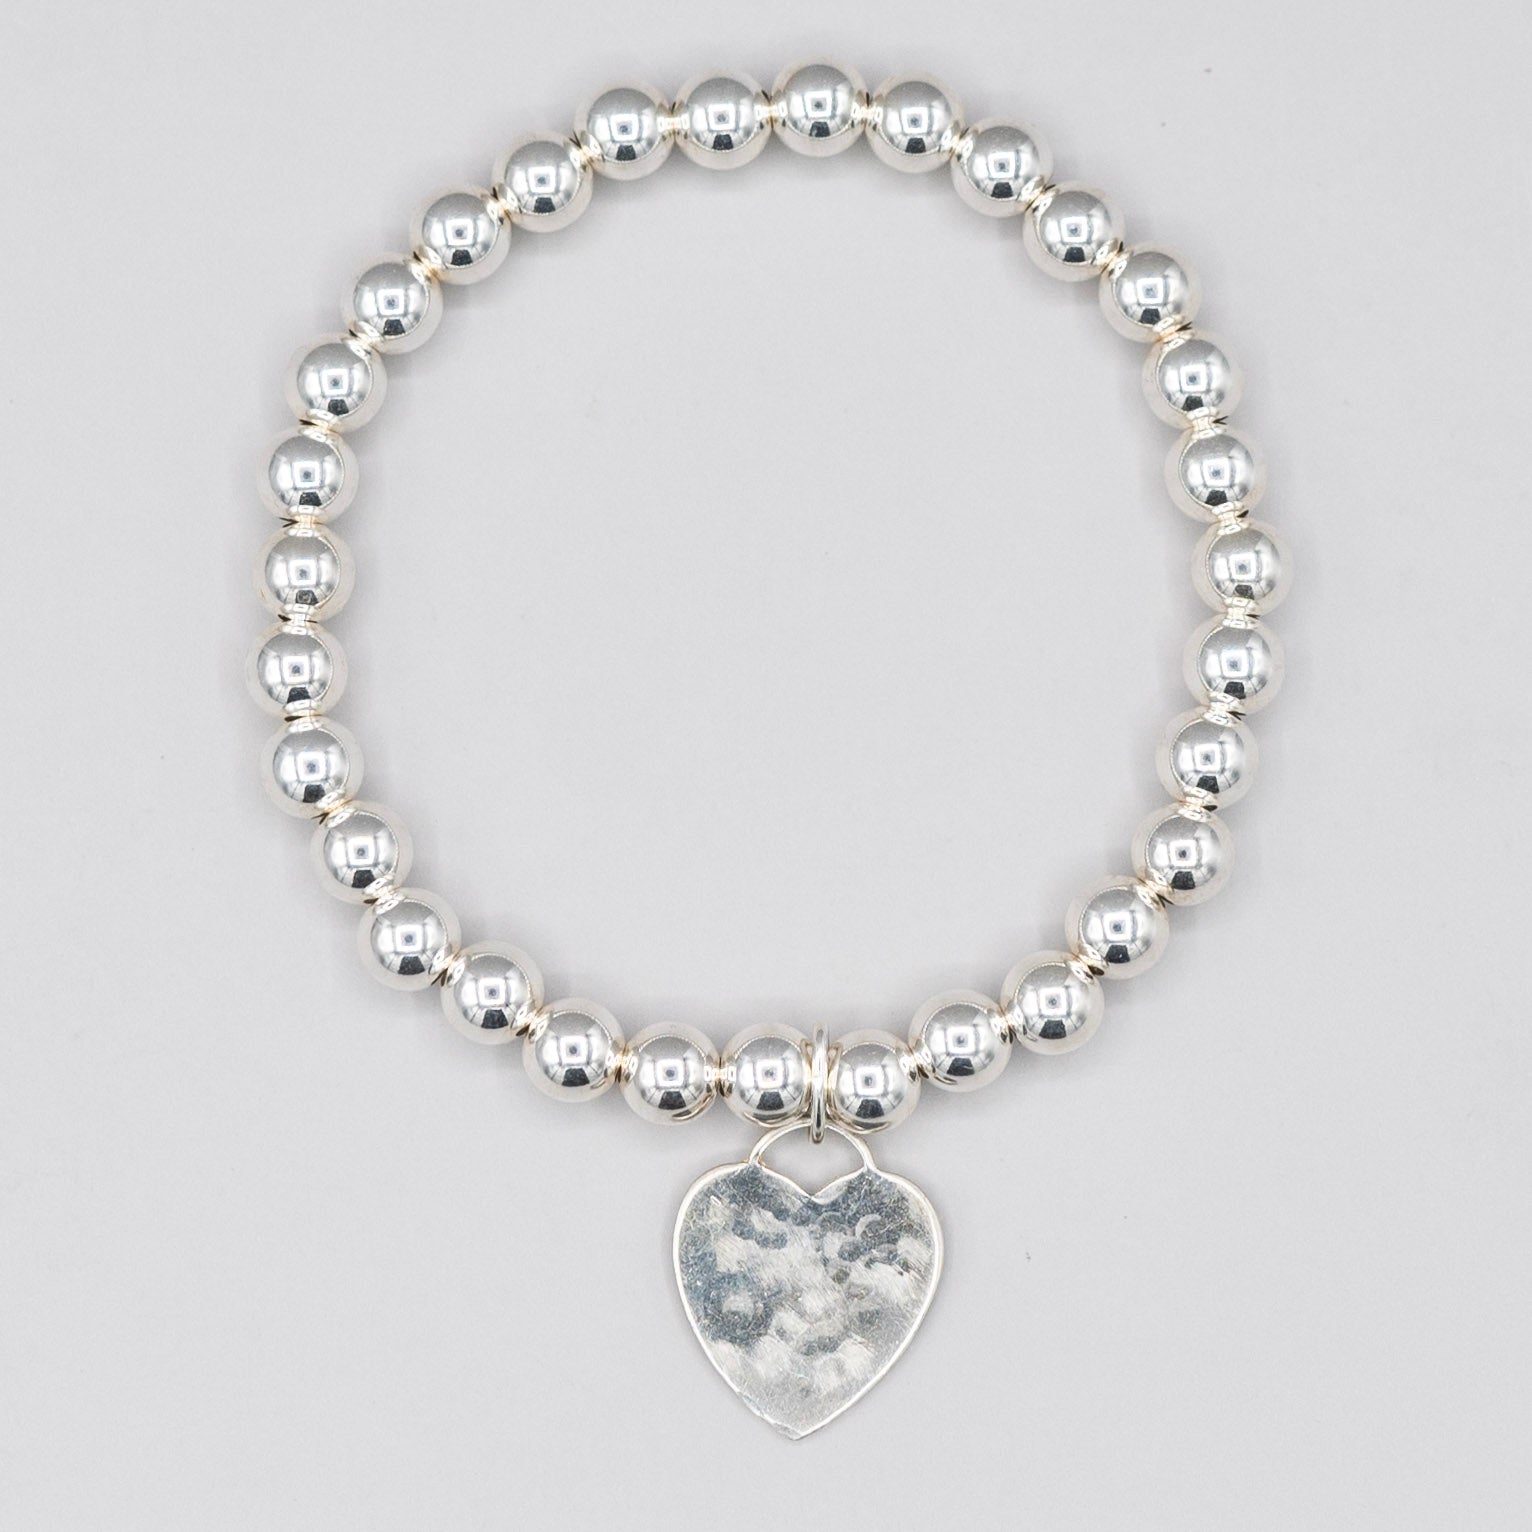 6mm Sterling Silver Heart Bracelet